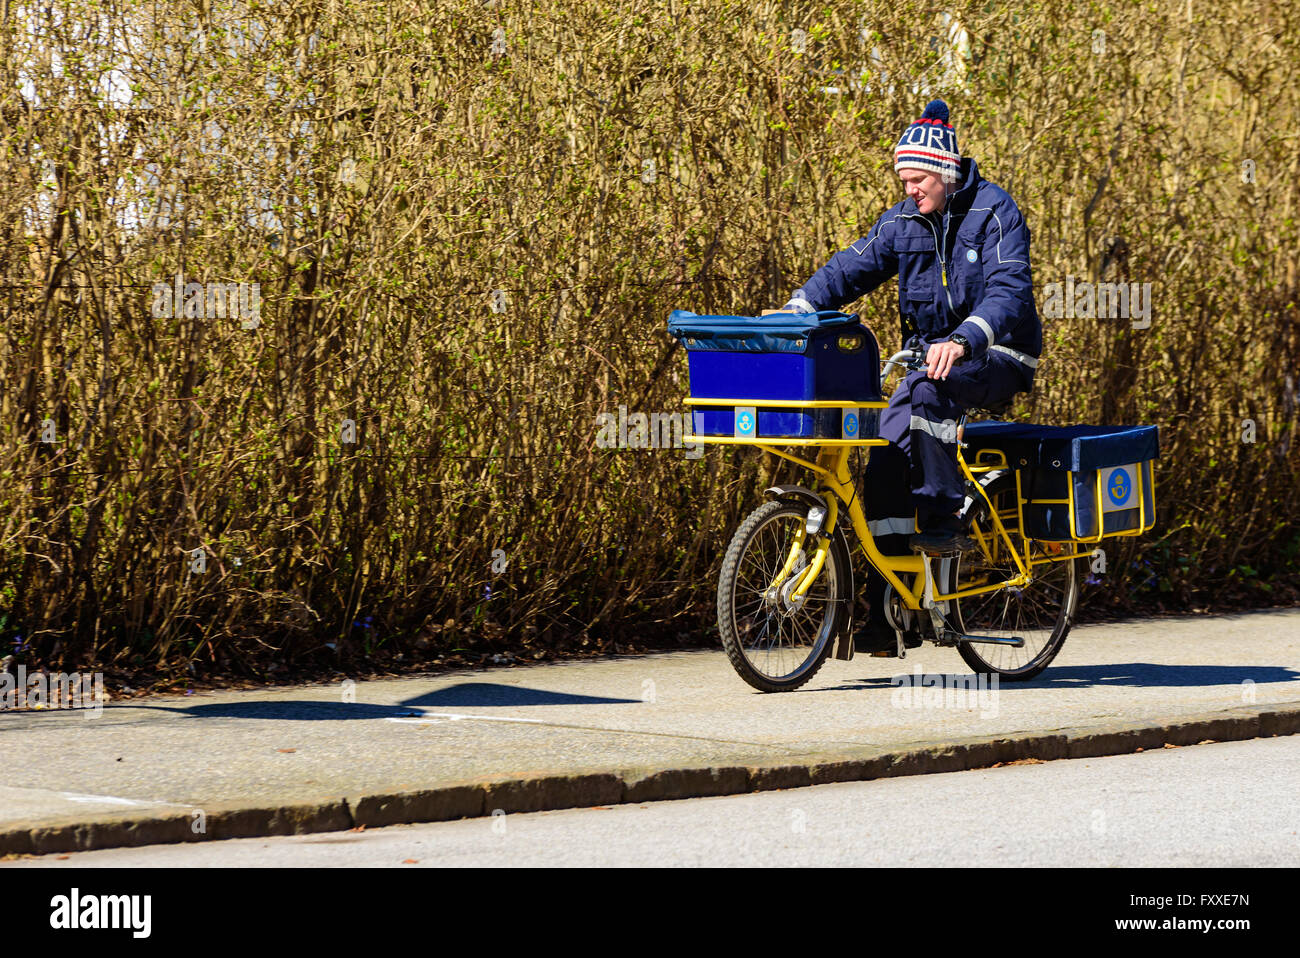 Lund, Schweden - 11. April 2016: Echtes Leben in der Stadt. Junge männliche Postbote seine Runde auf dem Fahrrad zu tun. Stockfoto